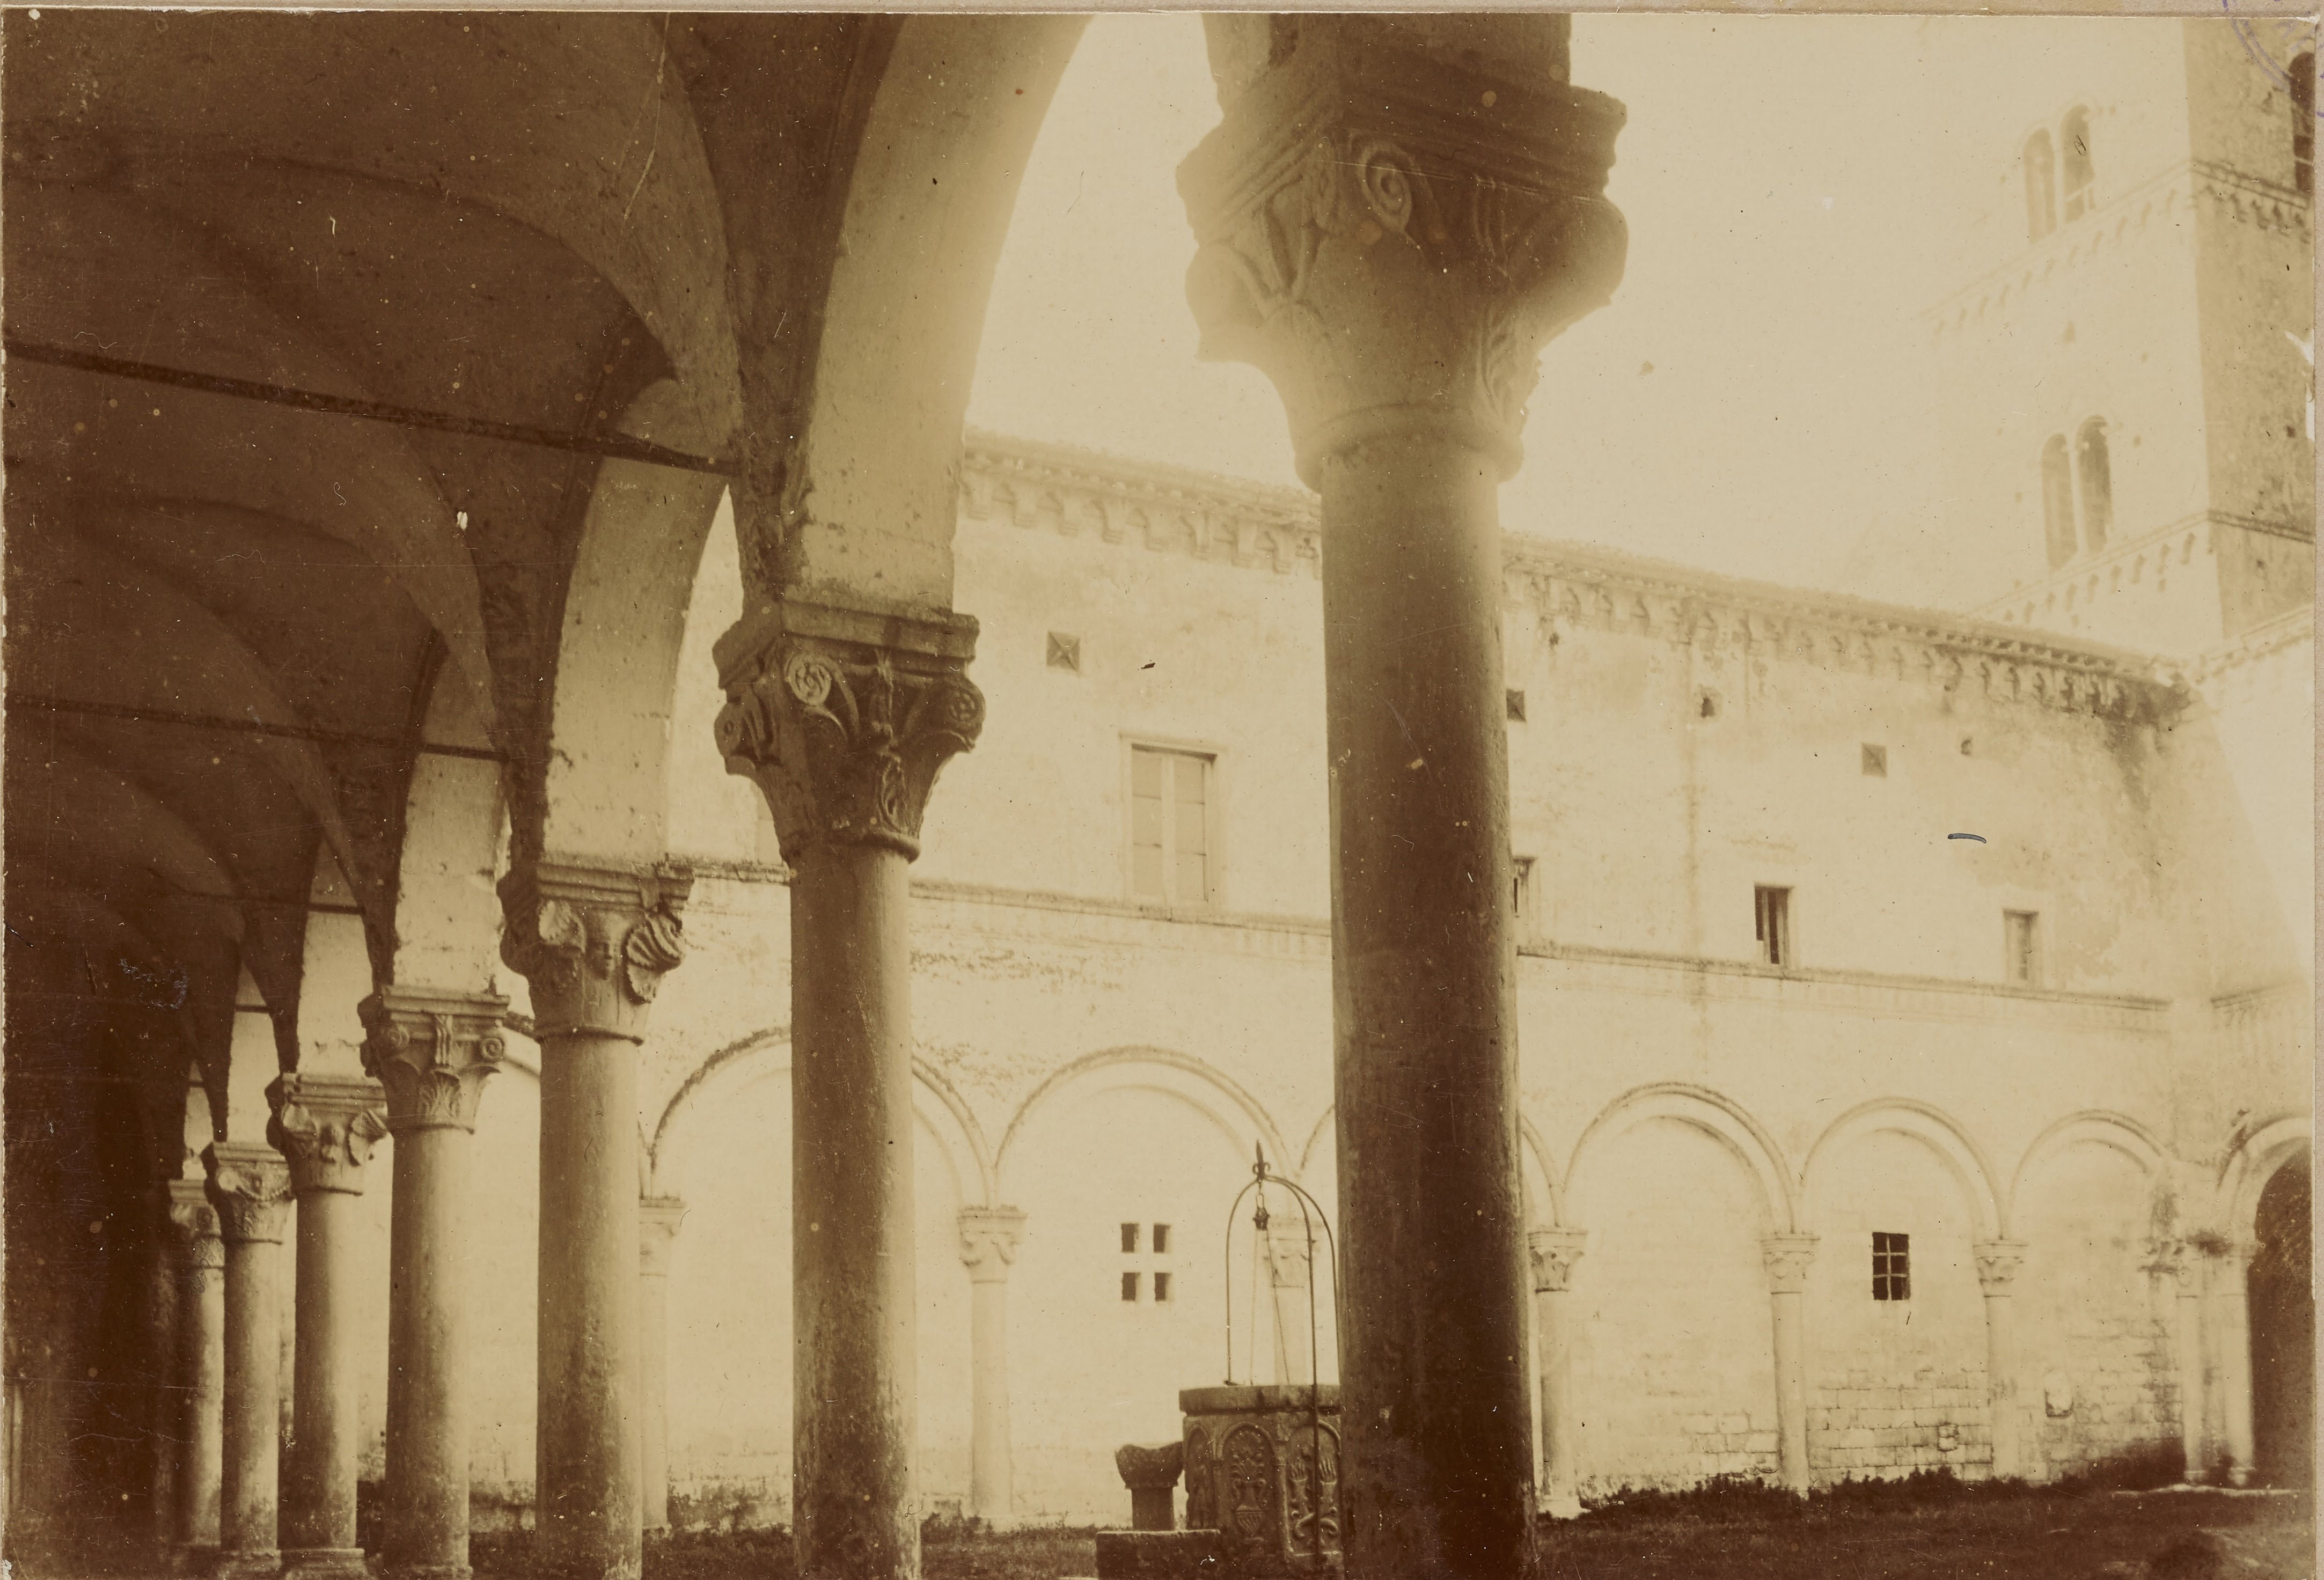 Denegri & C., Montescaglioso - Abbazia benedettina di S. Michele Arcangelo, secondo cortile, 1891-1910, aristotipo, MPI311484